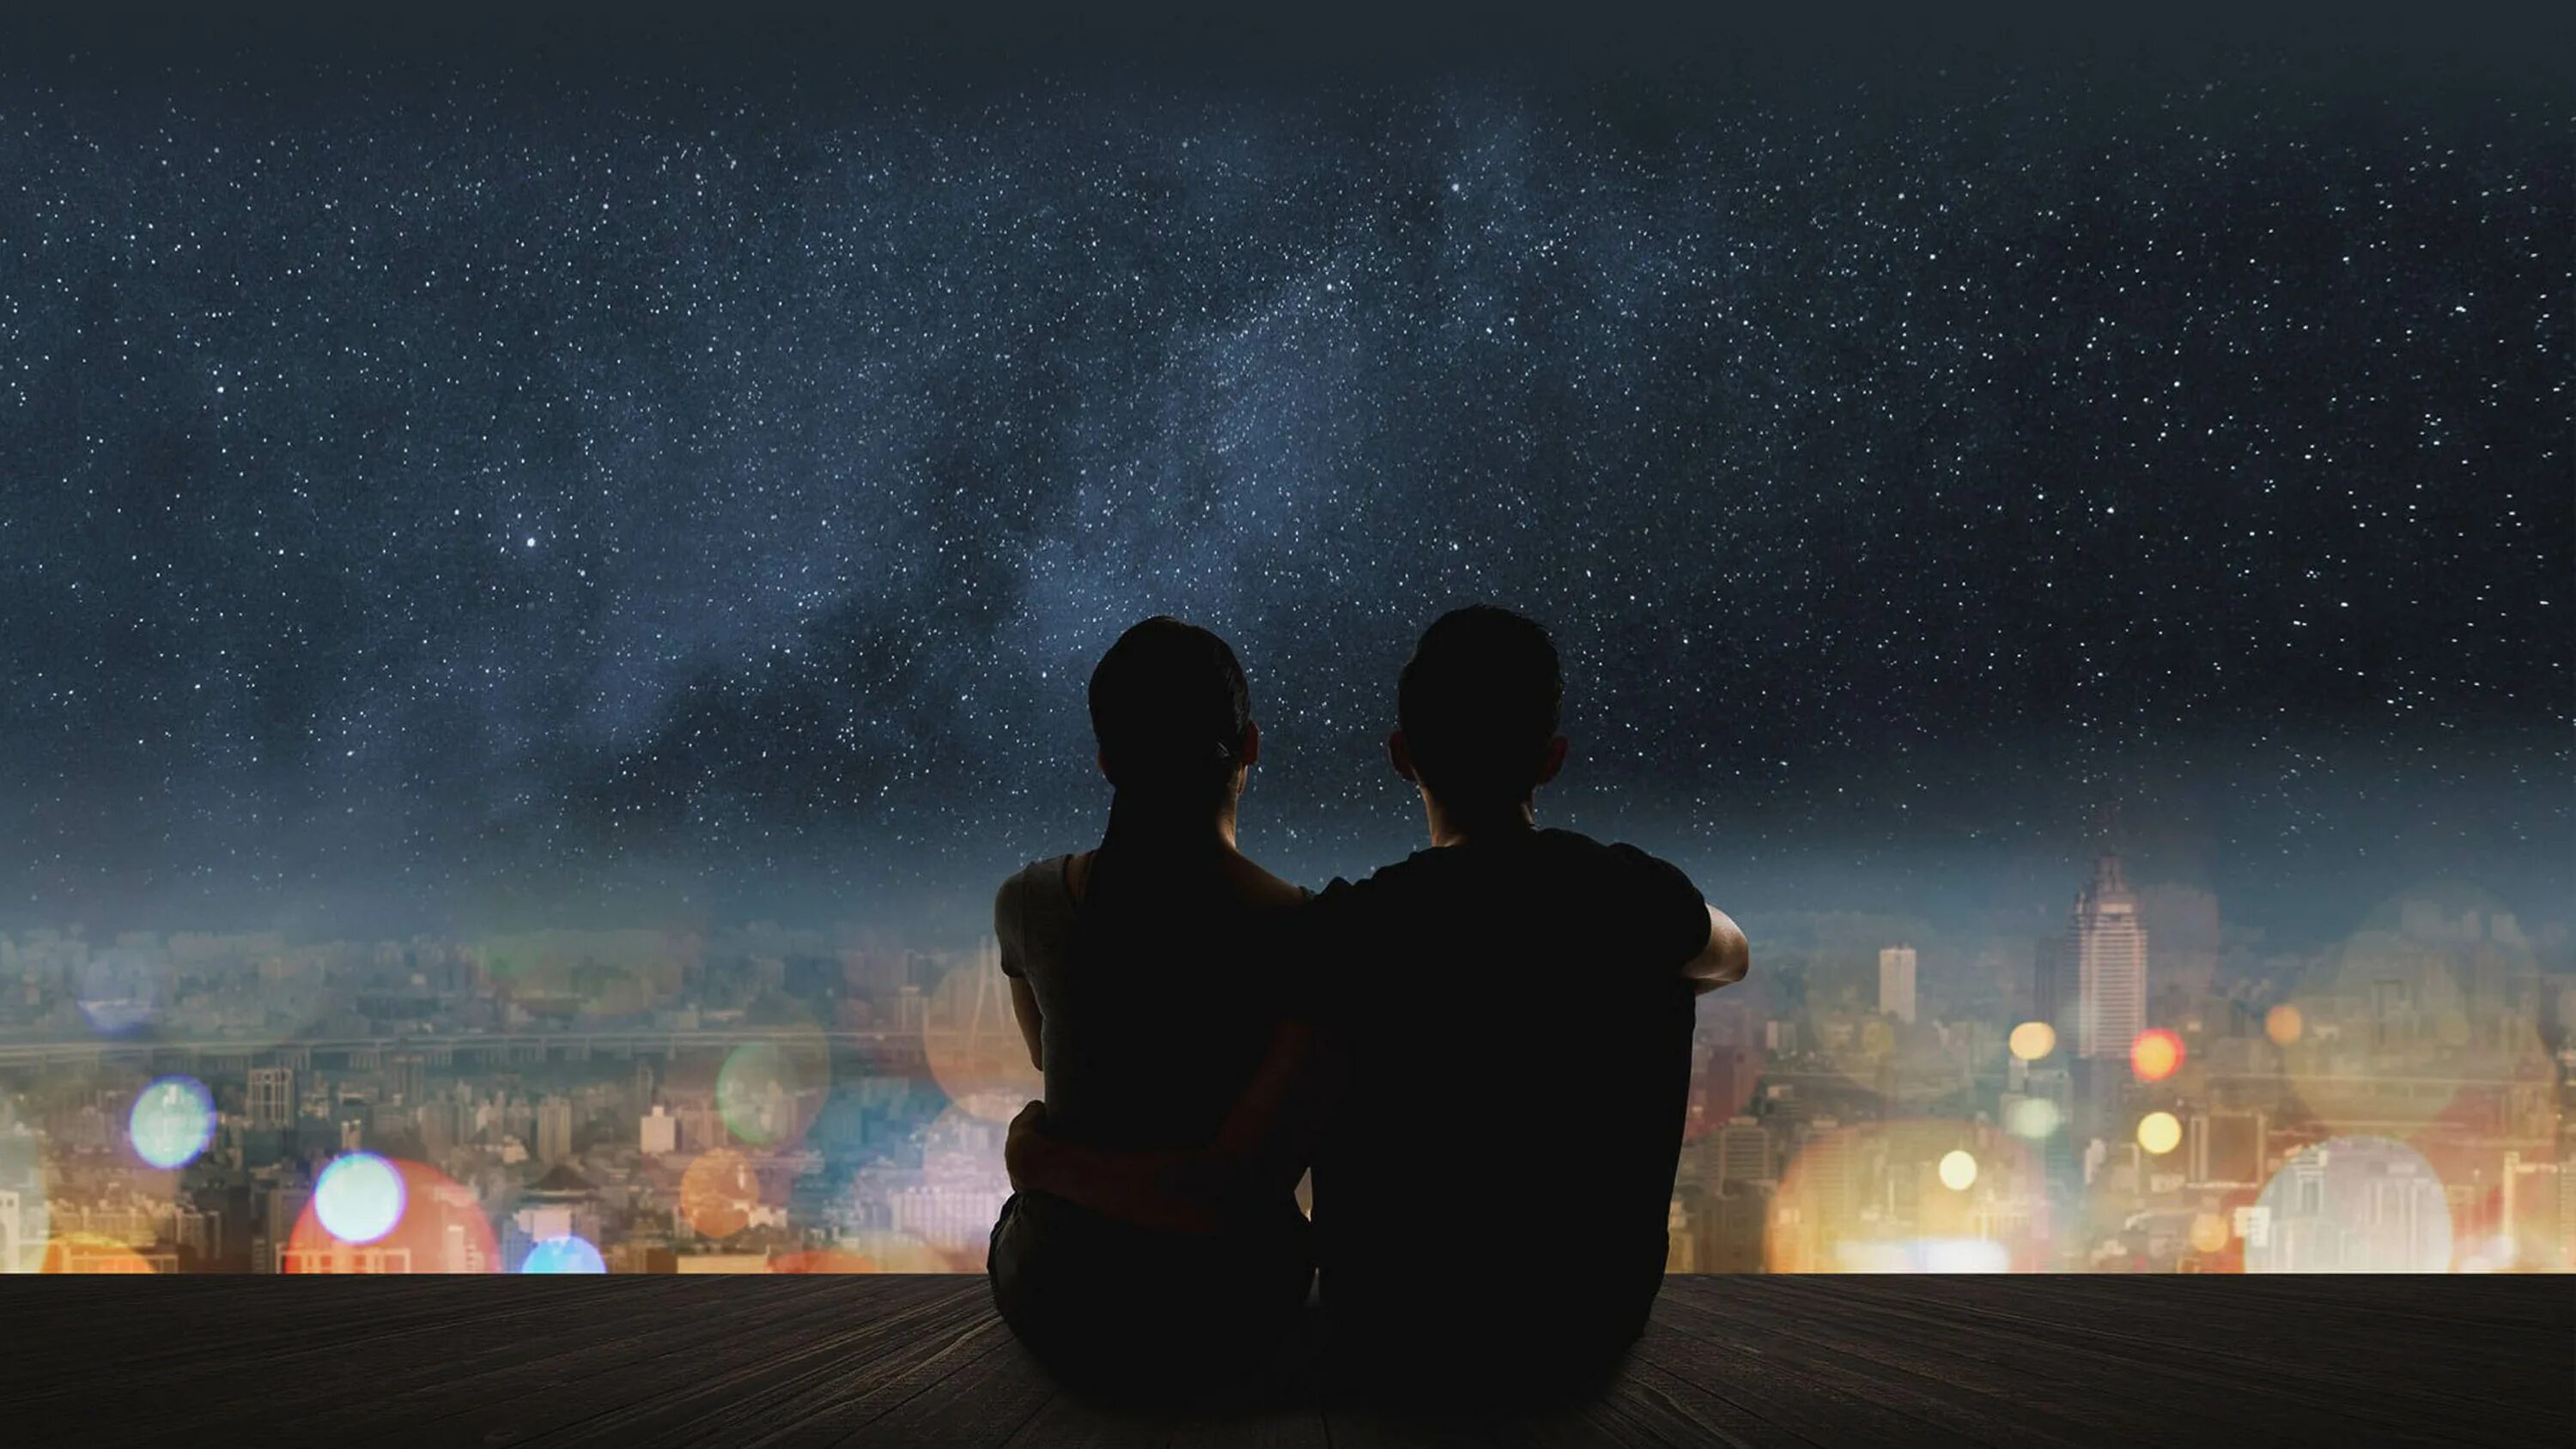 Пара на фоне ночного неба. Звездное небо и влюбленные. Пара на фоне ночи. Пара на фоне звездного неба. Night romance